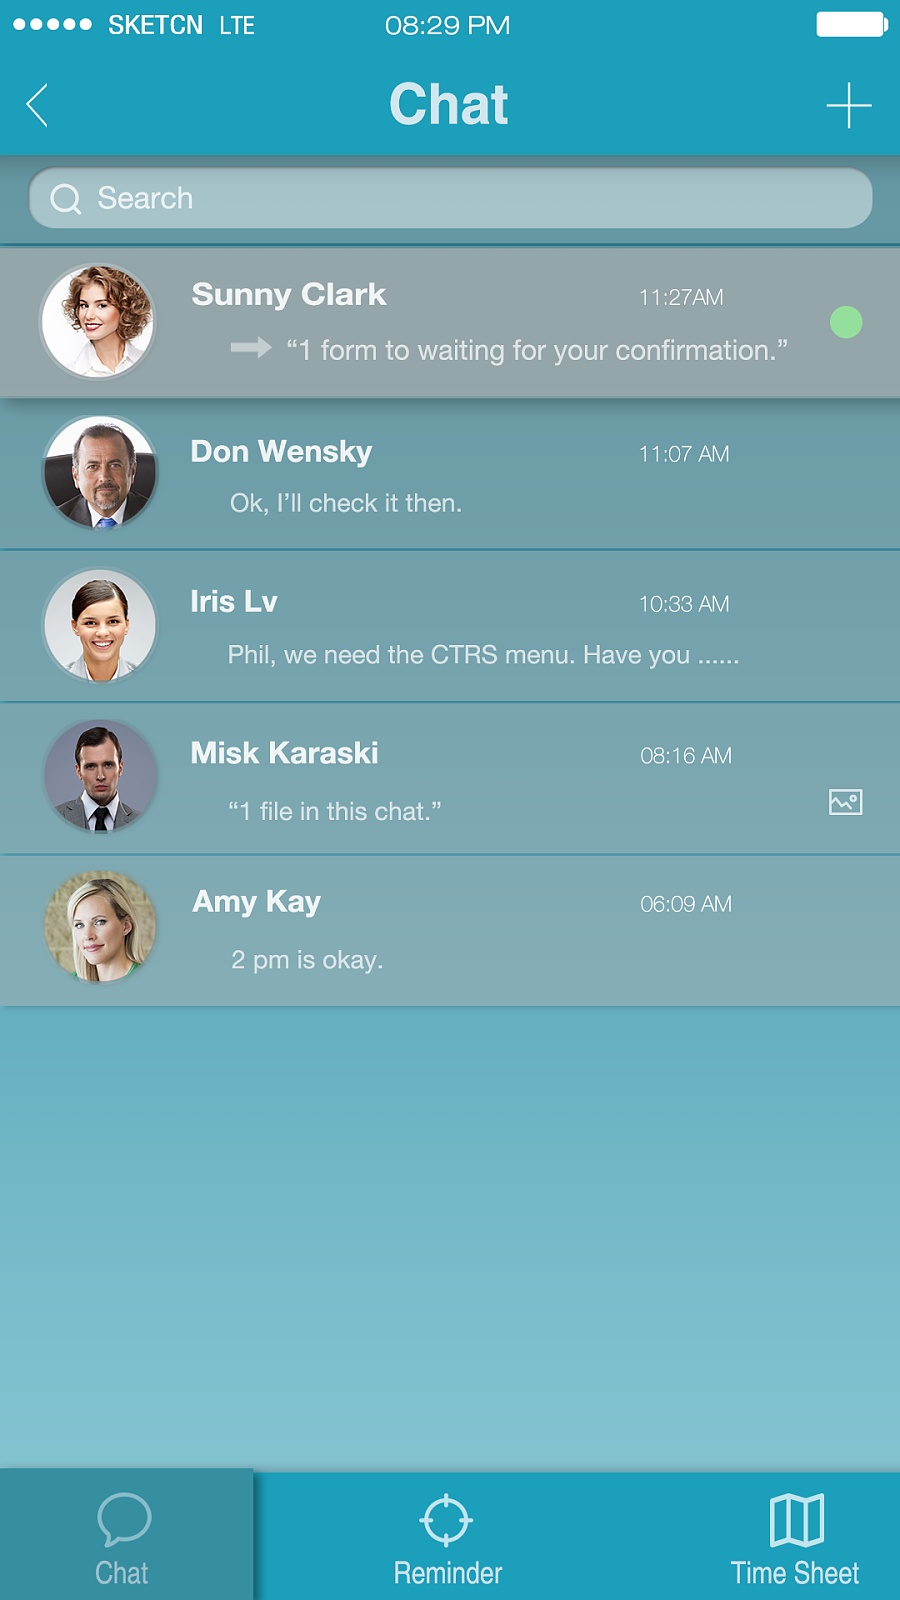 企业内部平台通信类app UI设计(2)- 聊天列表与